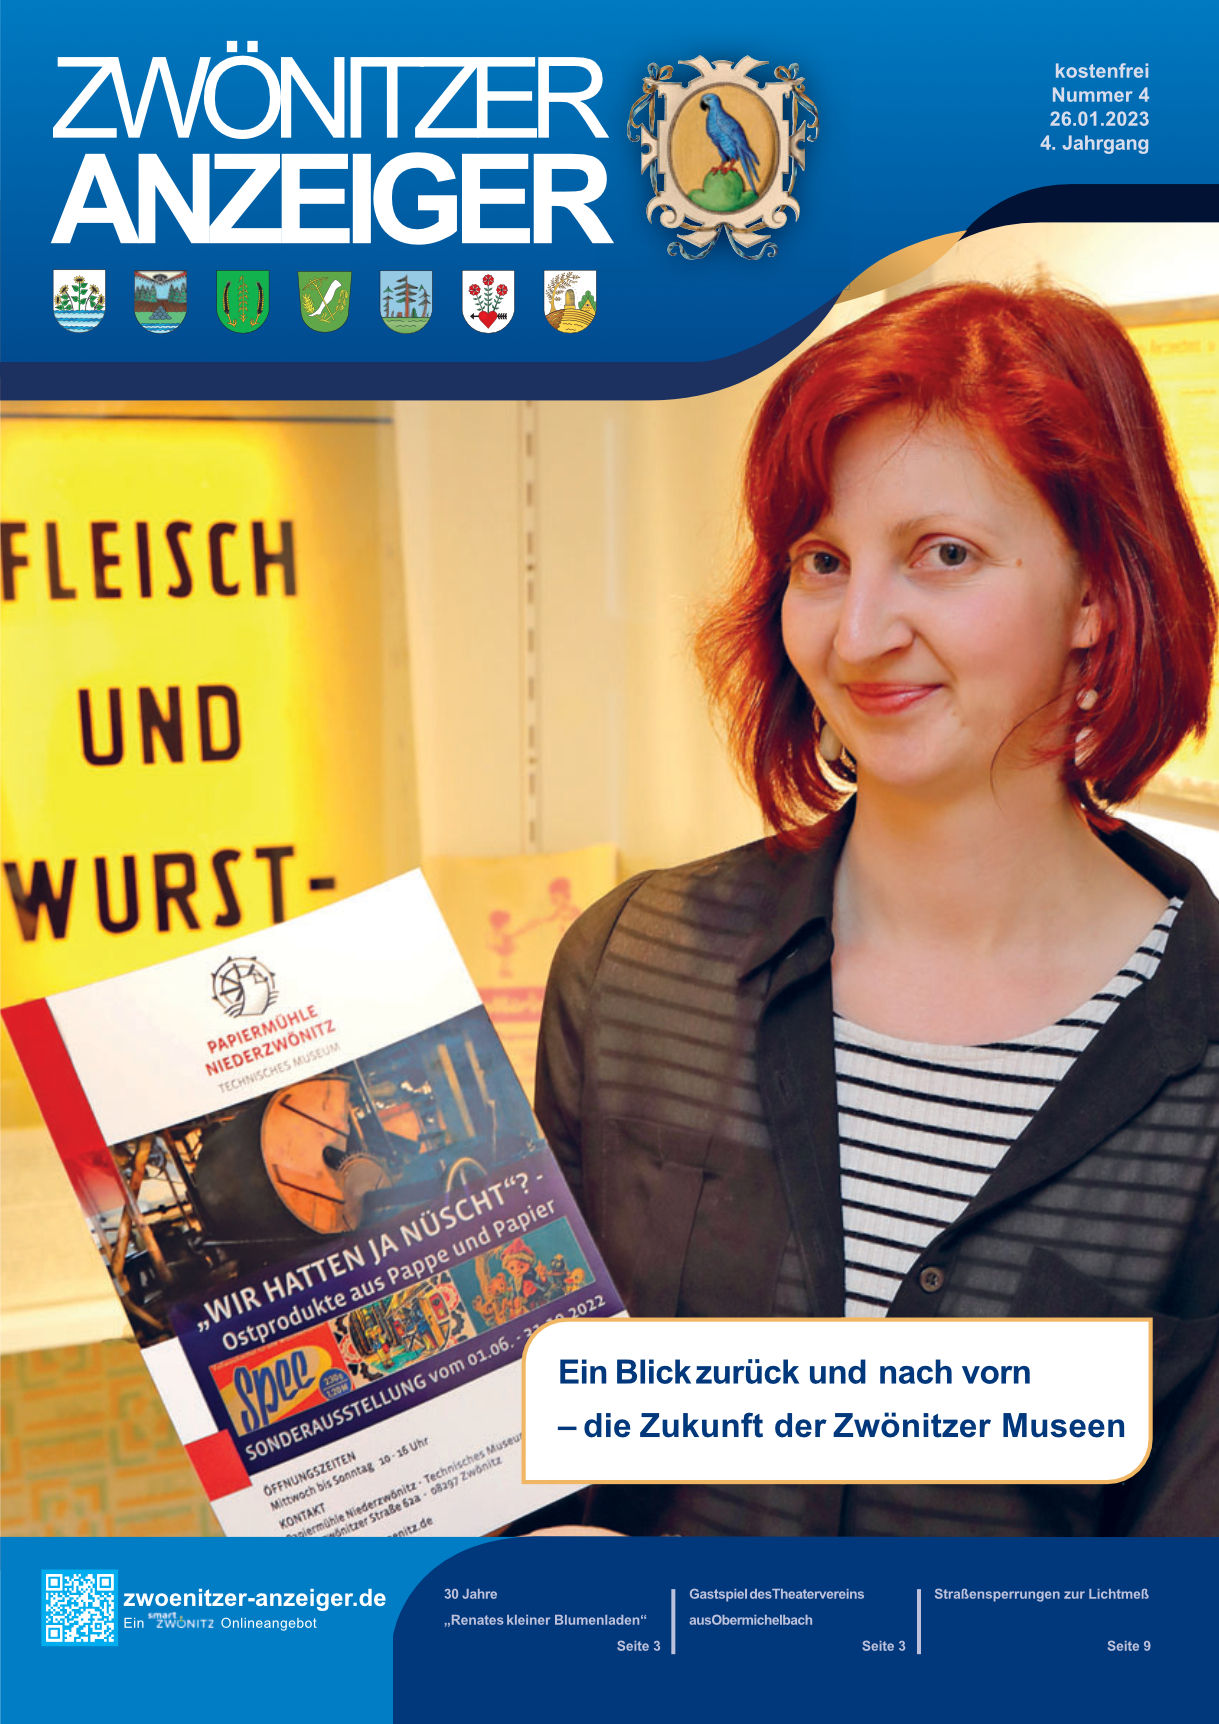 Titelbild Zwönitzer Anzeiger Frau mit Flyer zu Papiermühle